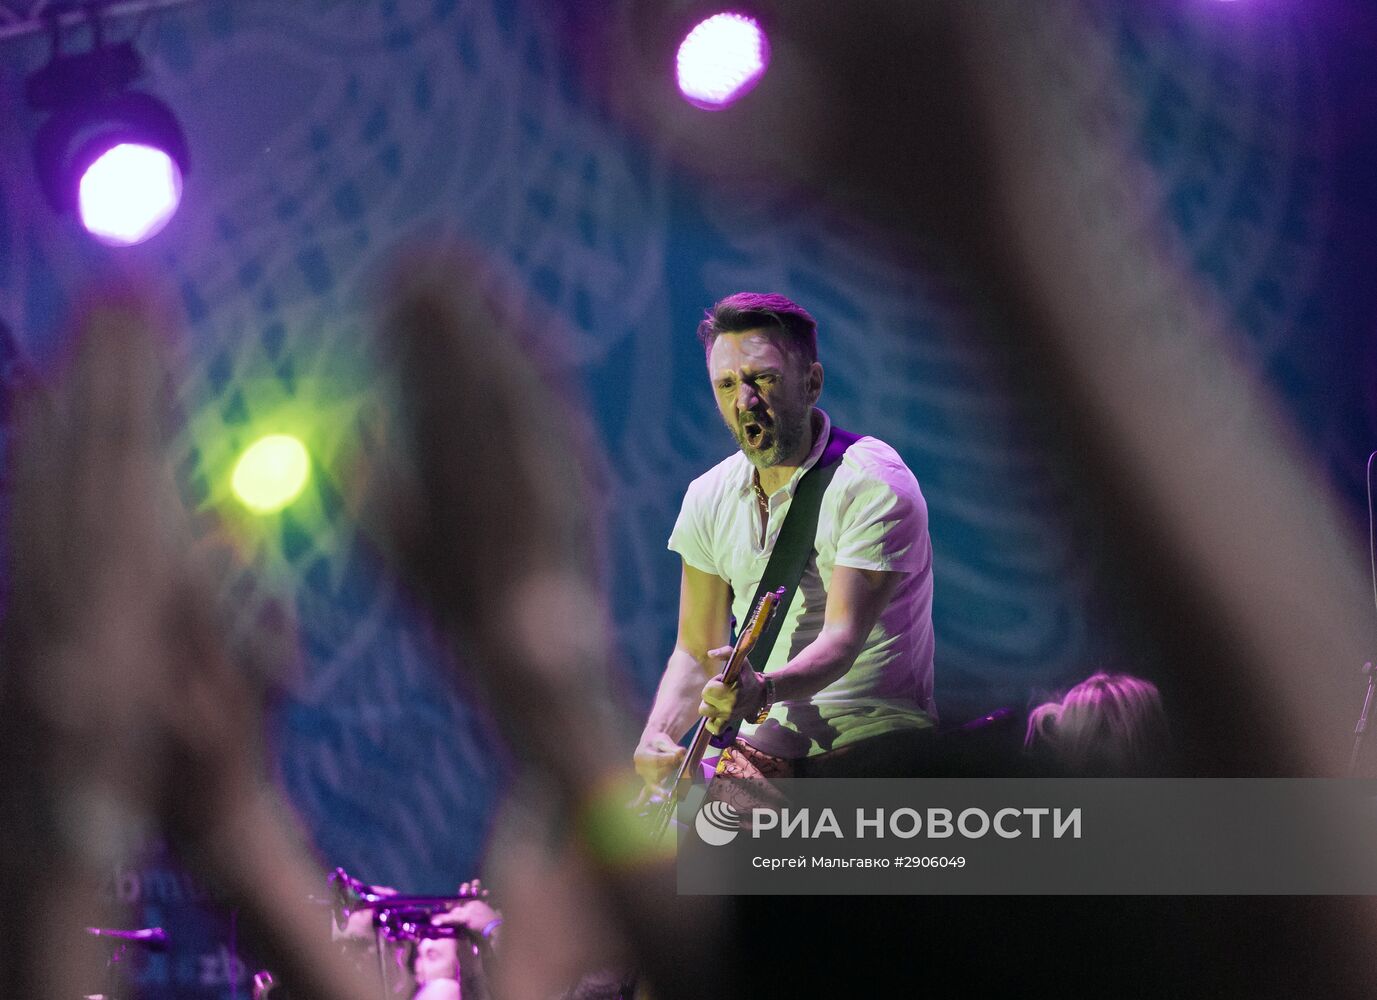 Фестиваль "Золотая балка" в Крыму